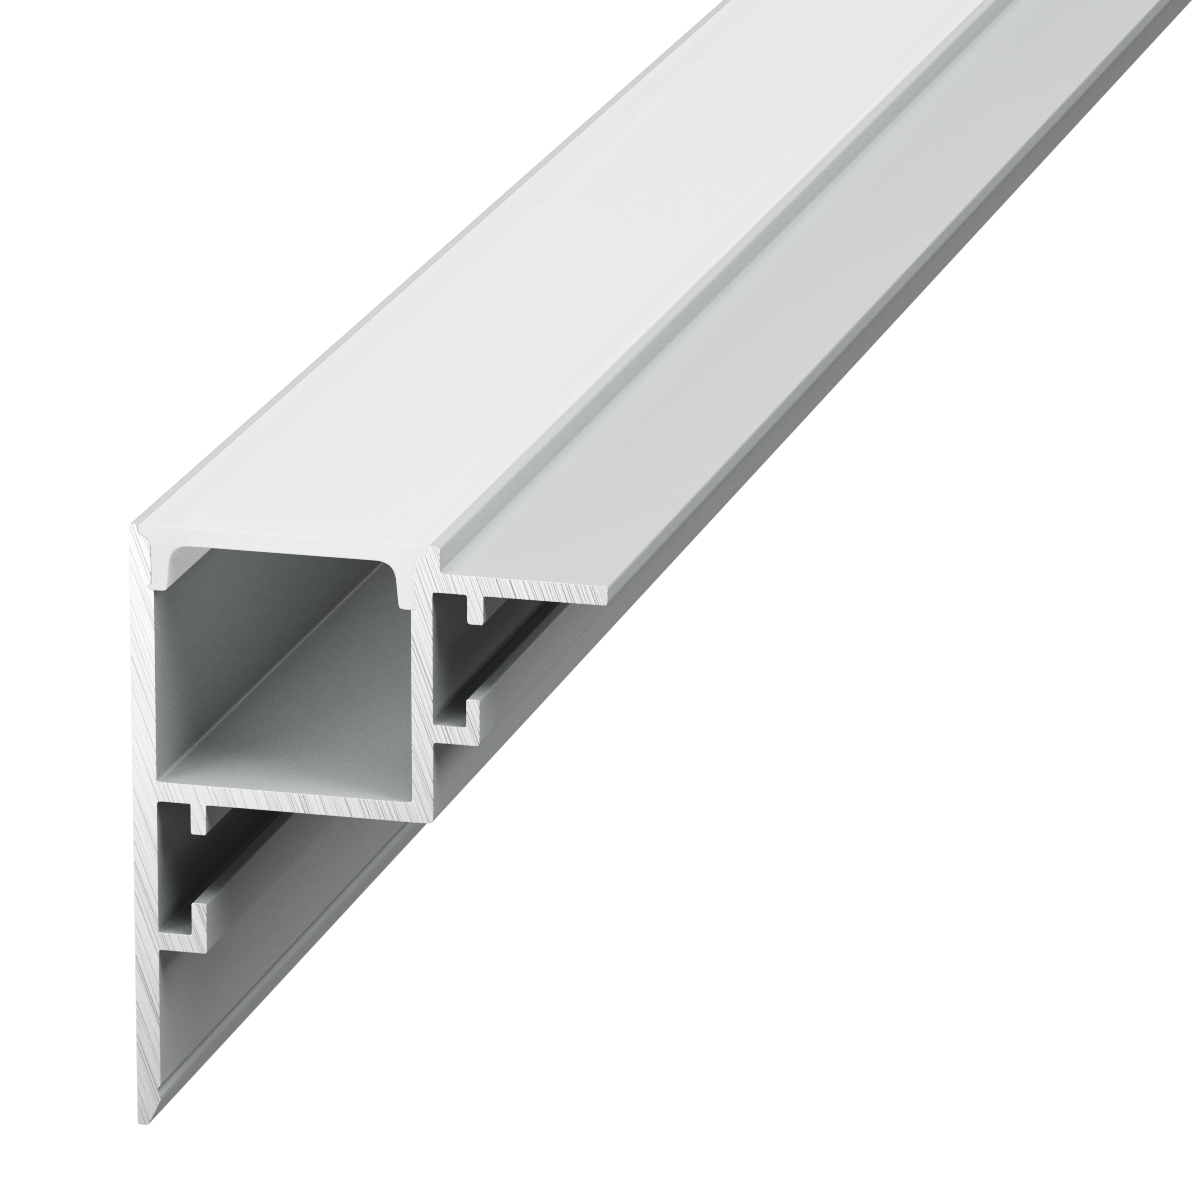 Профиль алюминиевый SWG PRO RC-3545-2.5 профиль для светодиодной ленты алюминиевый 2 м серебро угловой